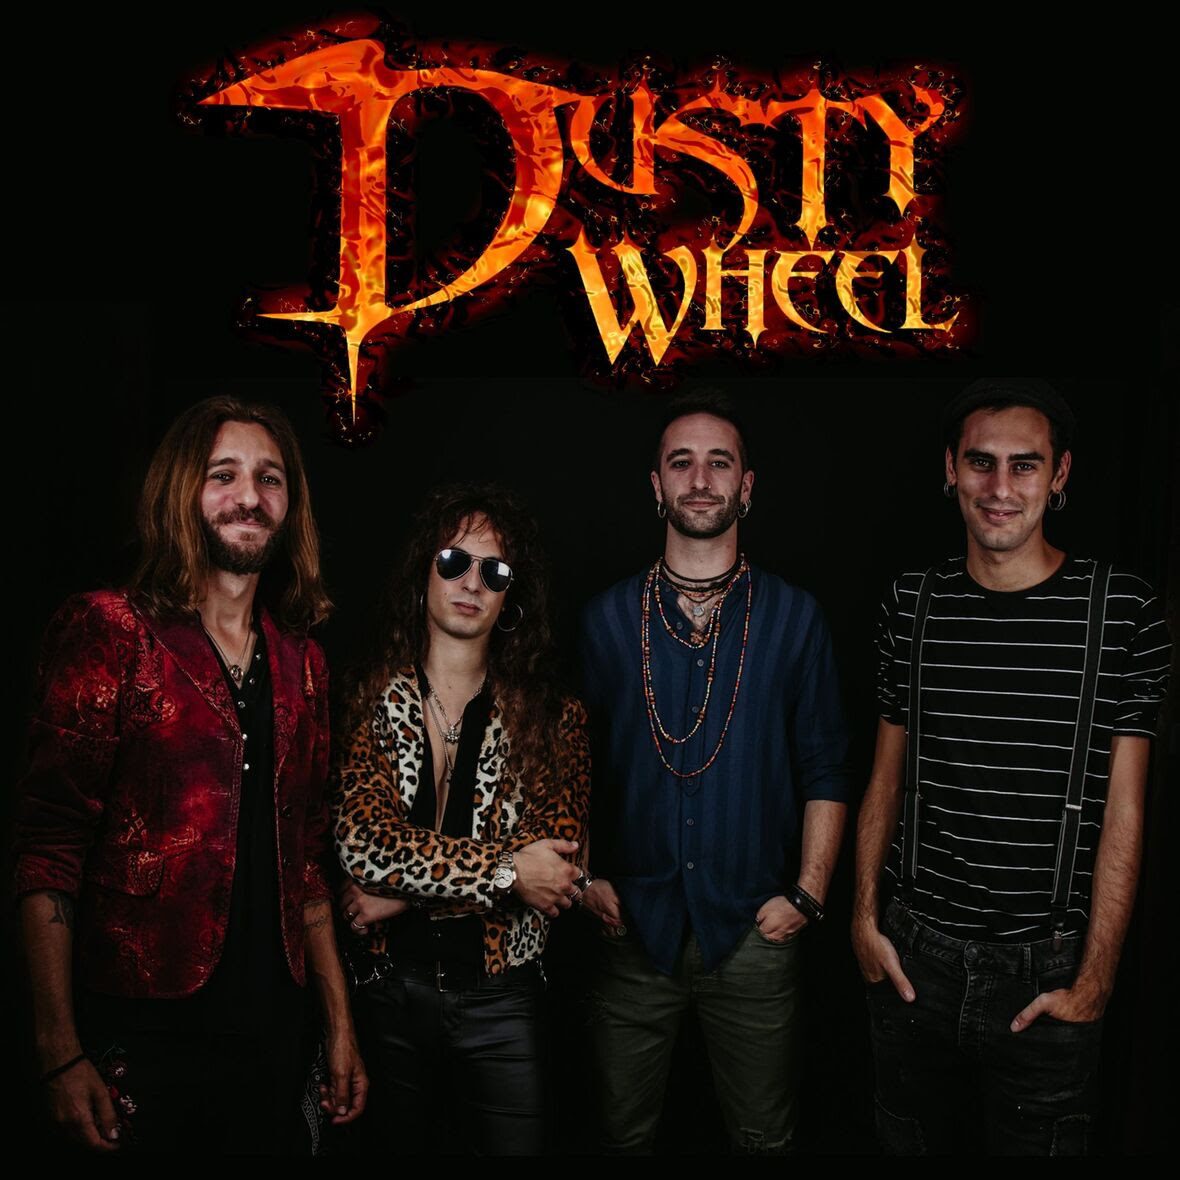 Crónica del concierto de Dusty Wheel en la sala Soho, en Cádiz -16-Octubre-2021